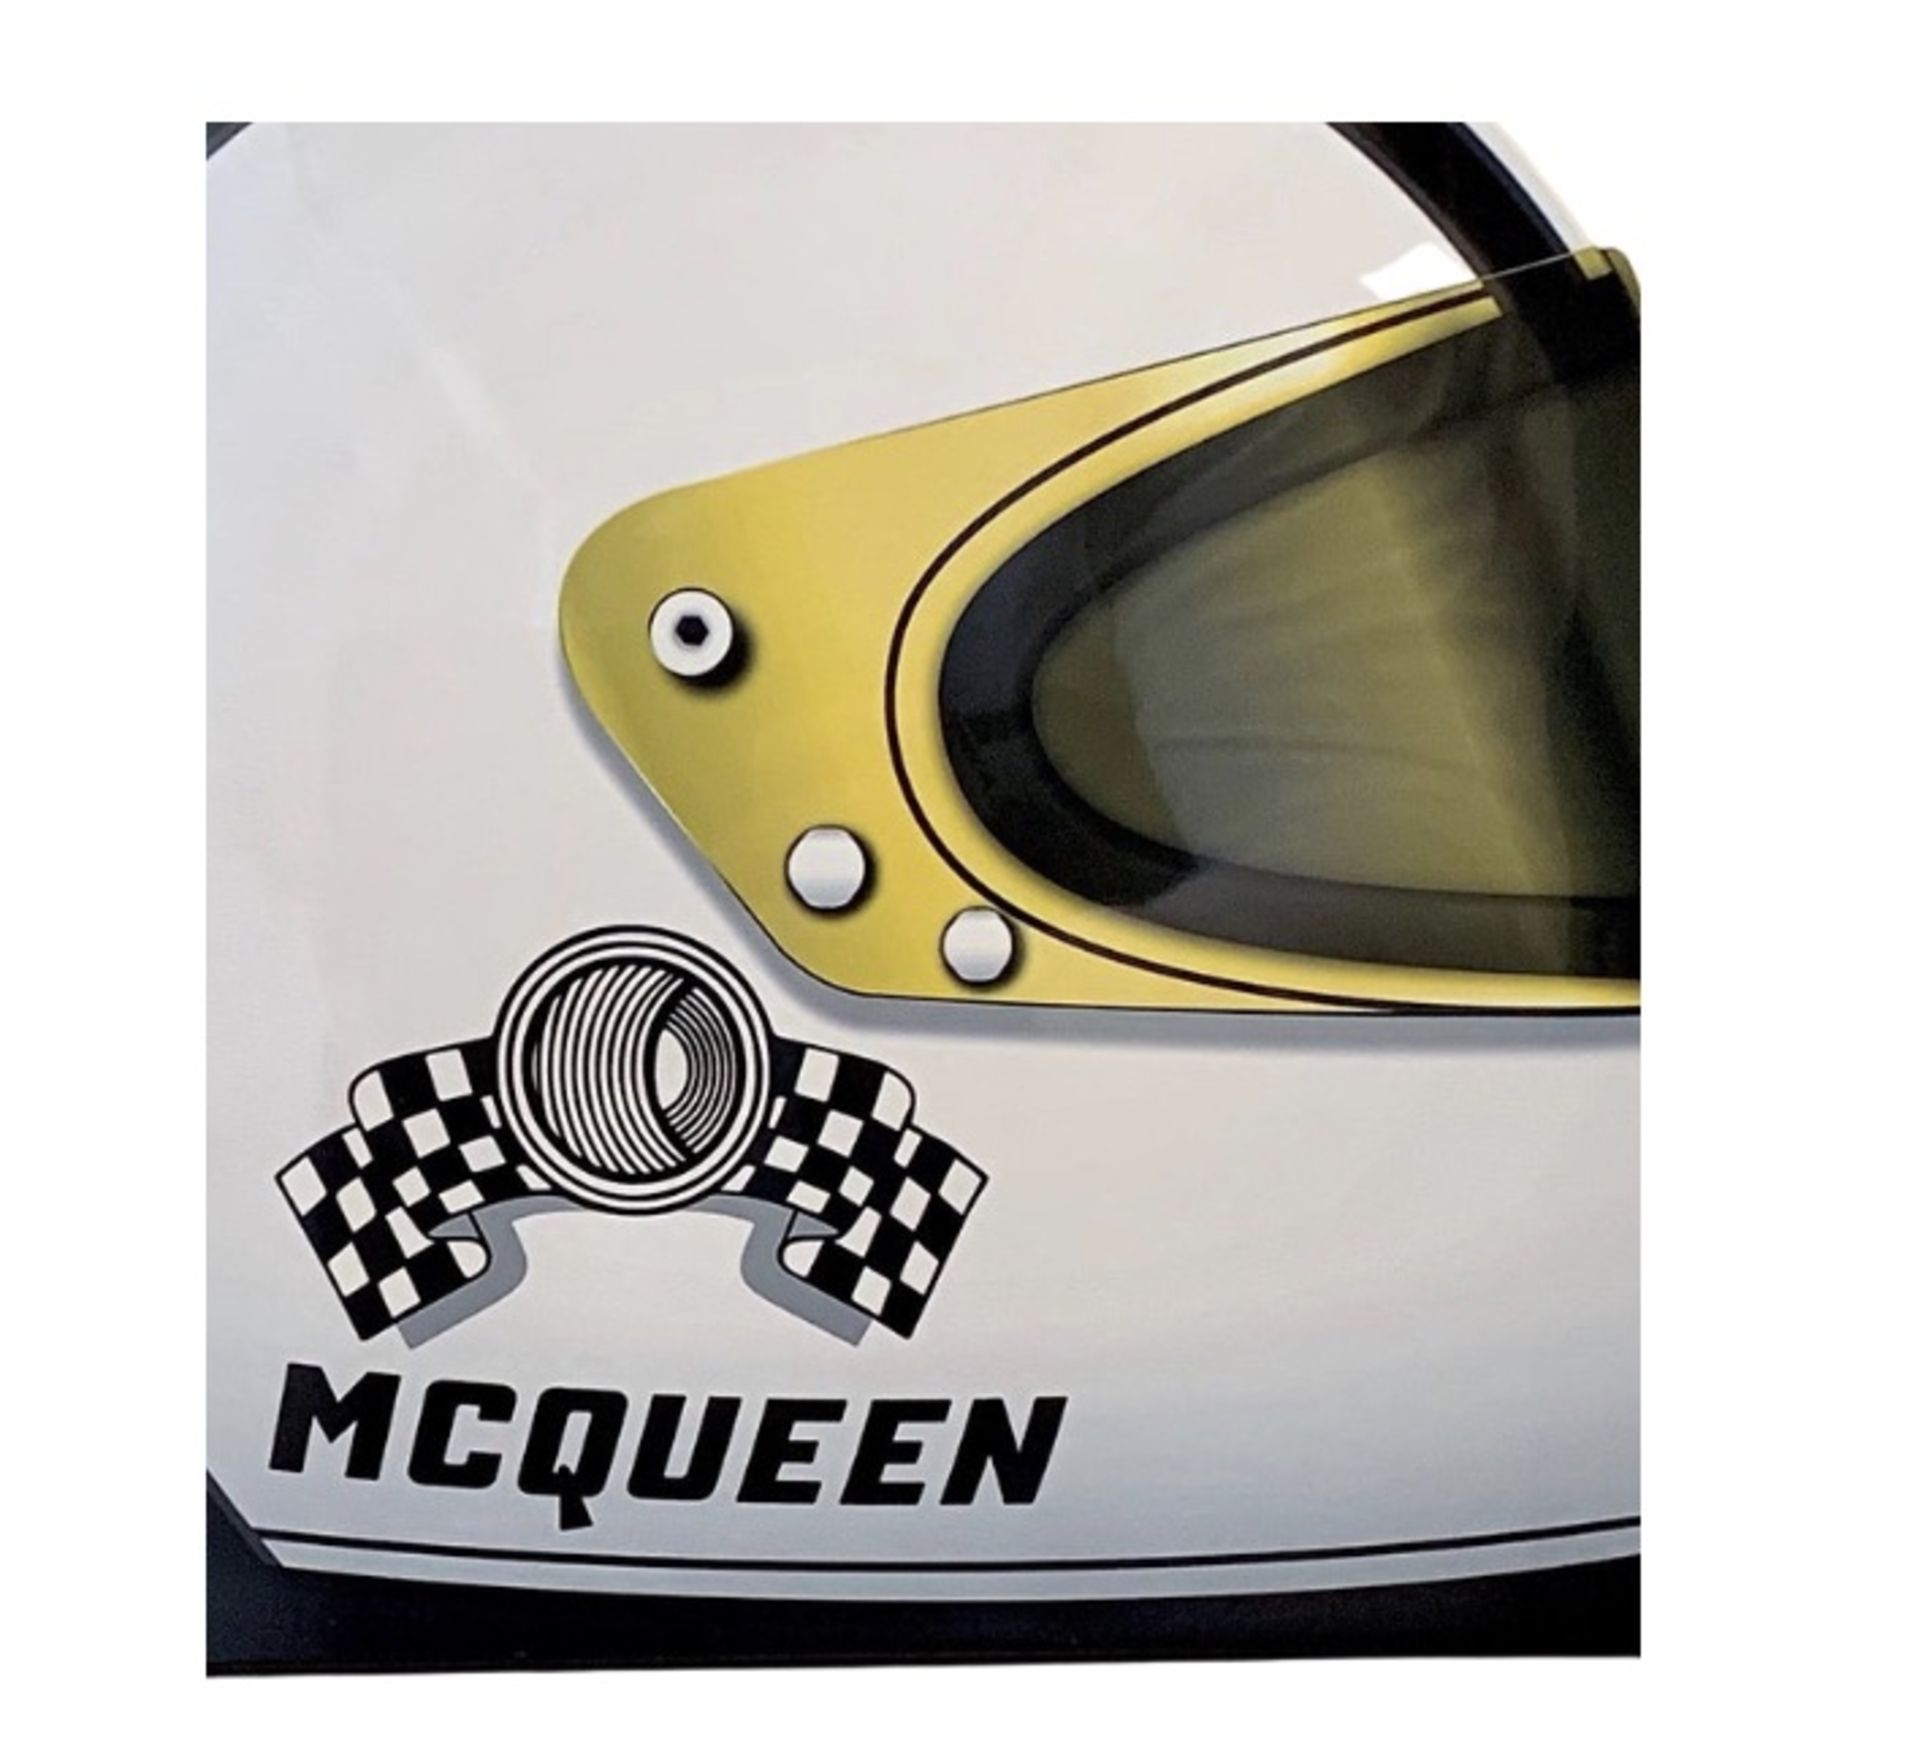 Steve McQueen Helmet Aluminum Wall Garage Display  - Image 2 of 4